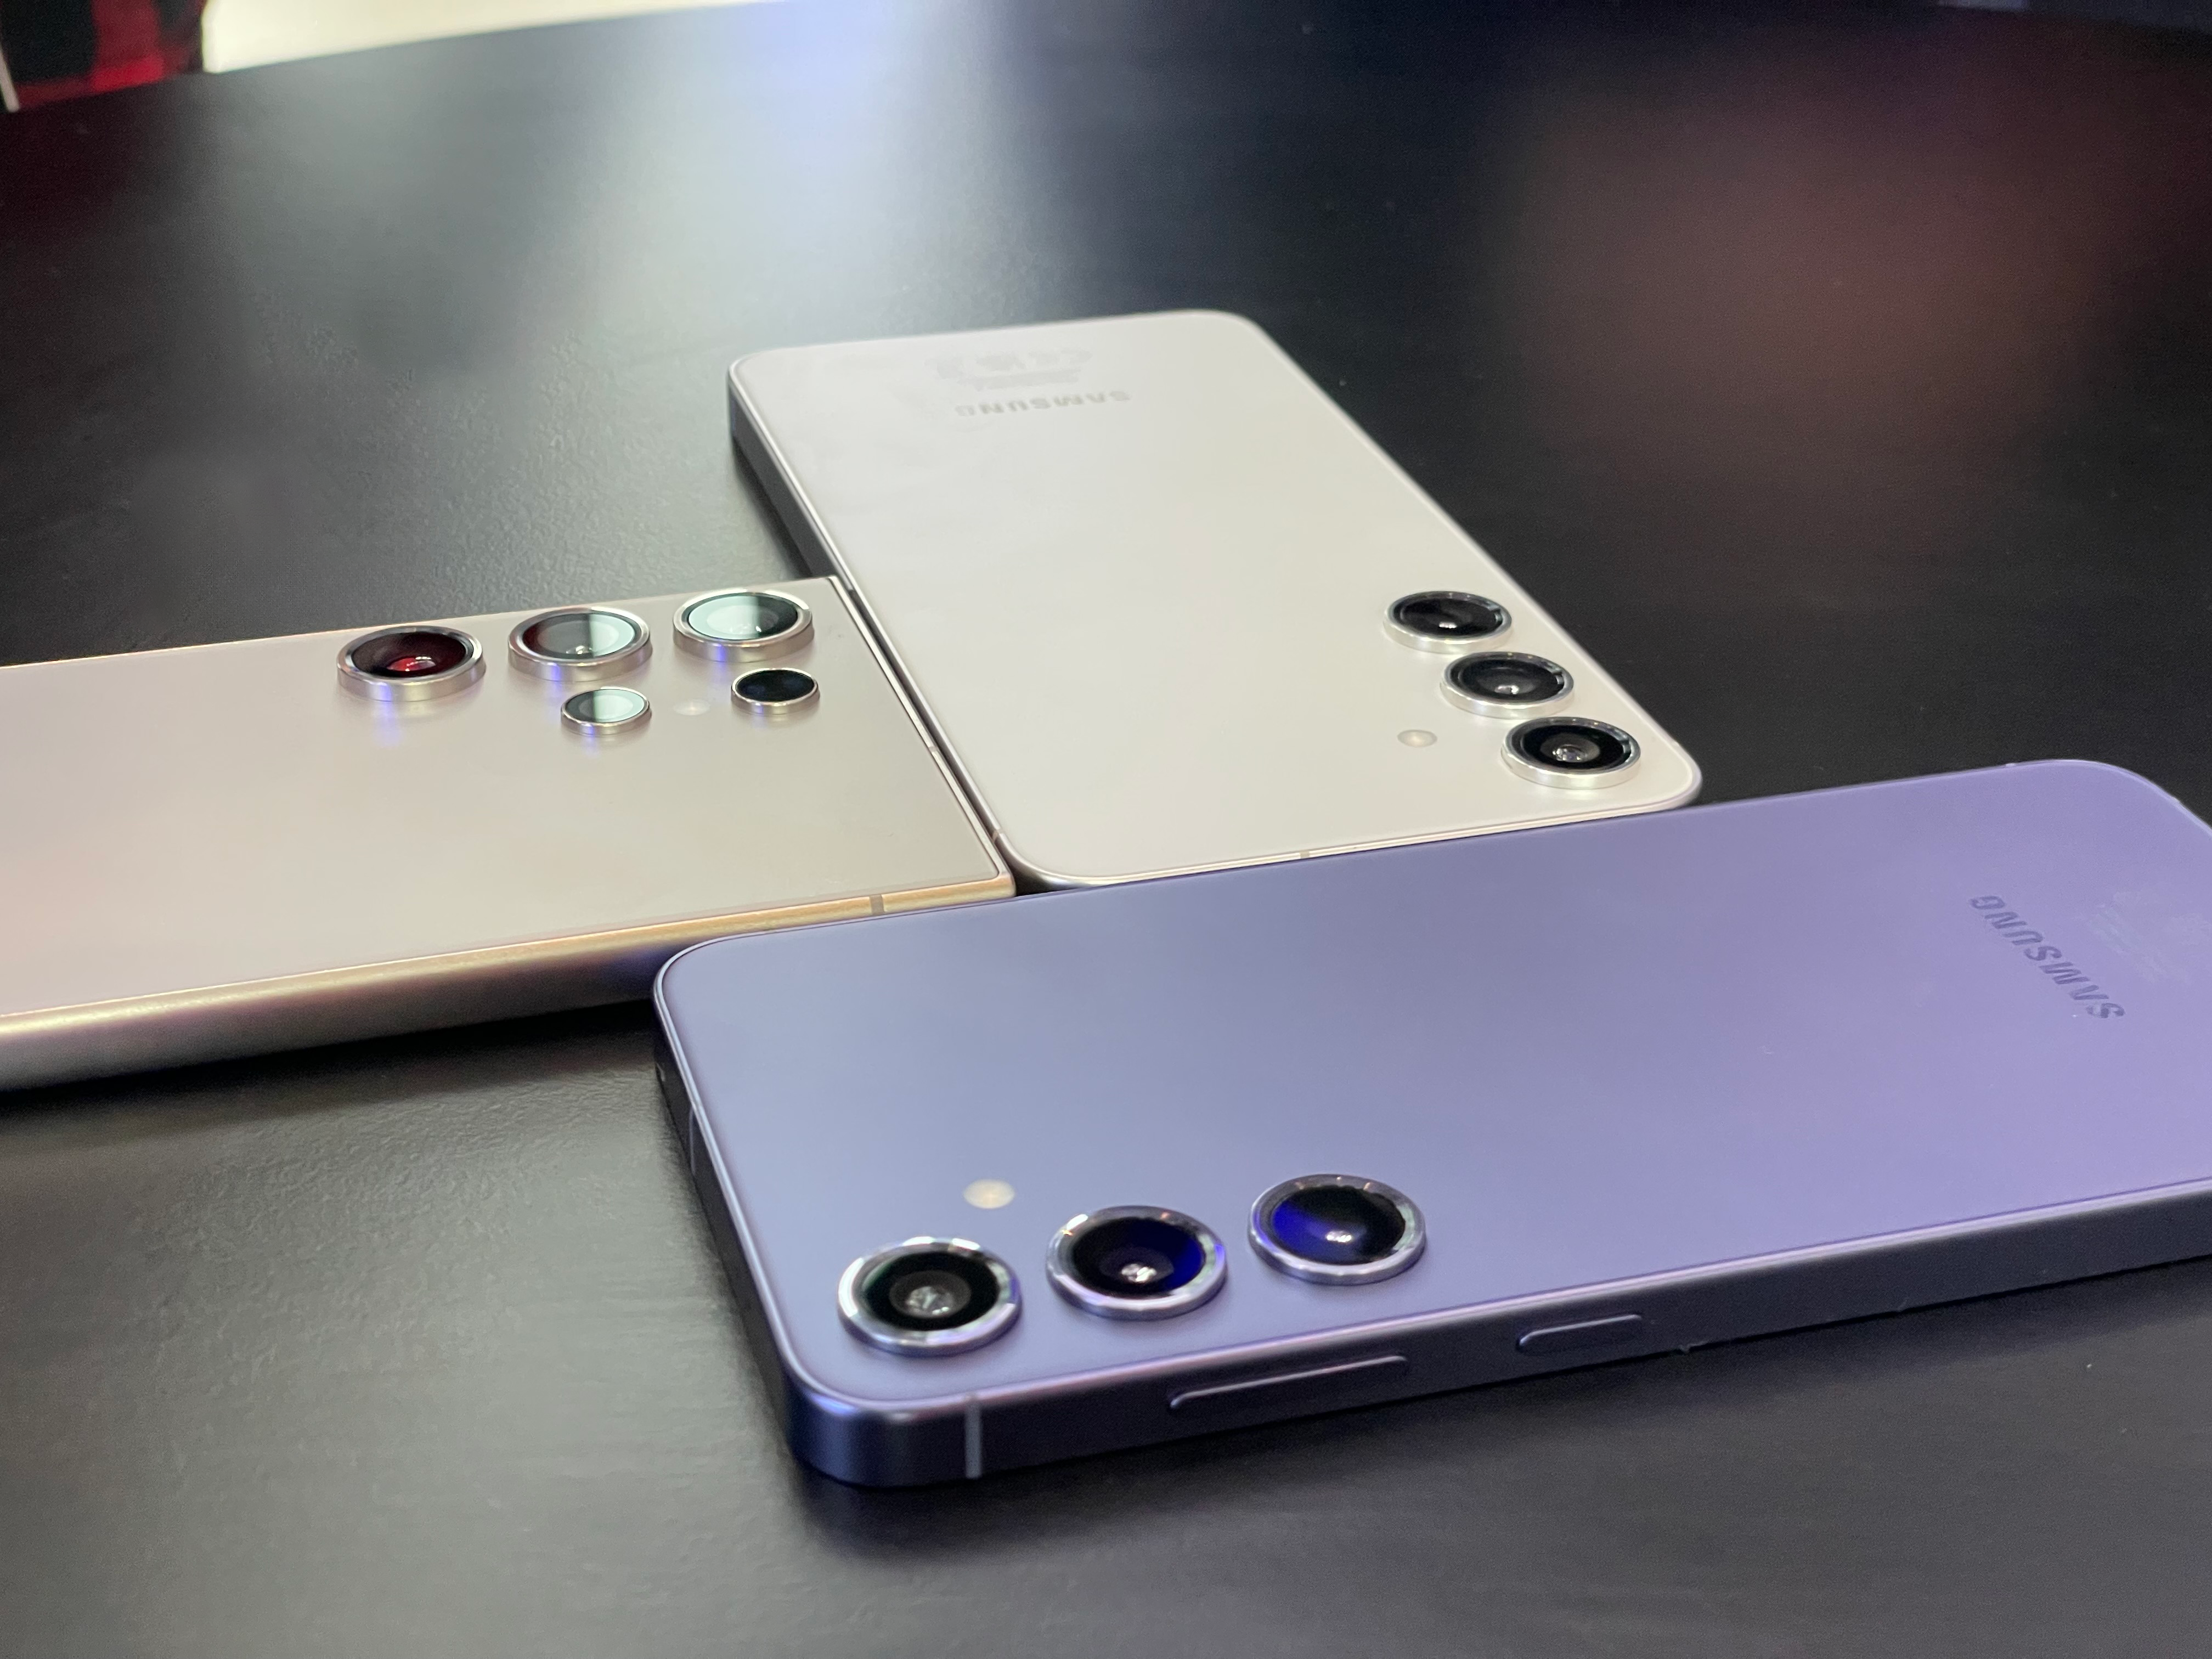 Trzy różne smartfony Samsung Galaxy S24 leżące obok siebie na czarnym blacie, z widocznymi systemami aparatów fotograficznych.